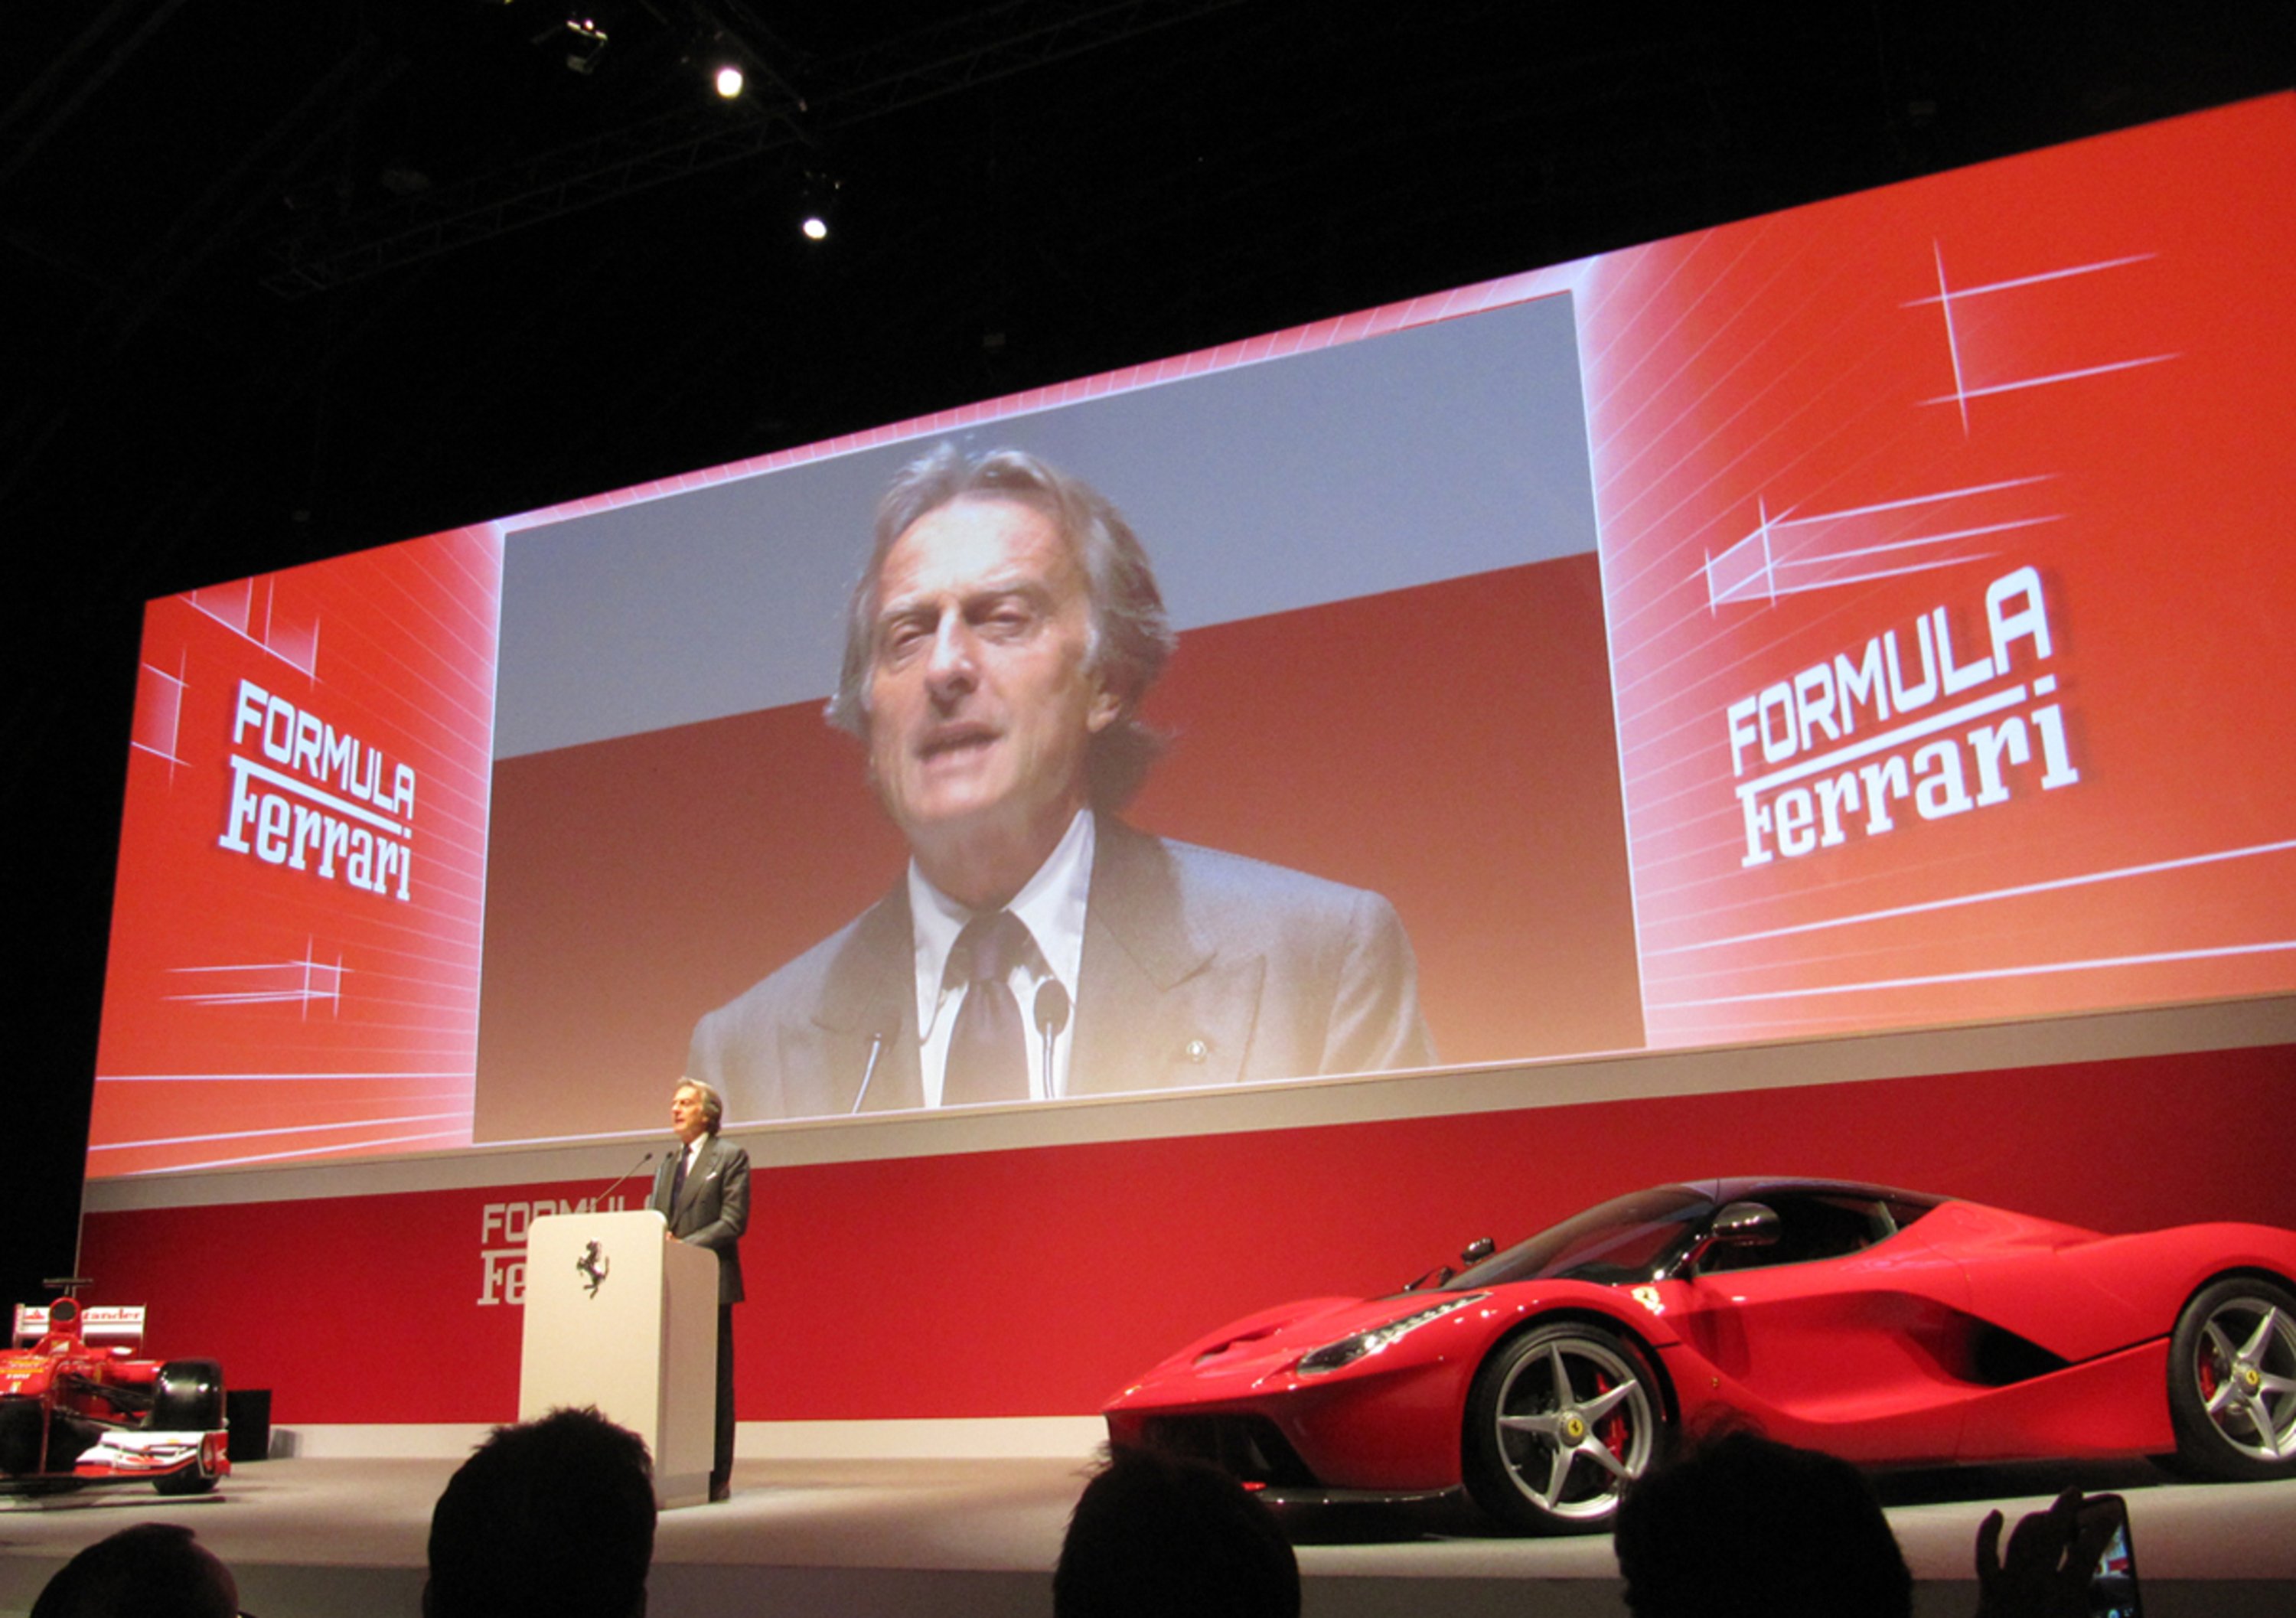 Montezemolo: &laquo;Ferrari diminuir&agrave; la produzione ma creer&agrave; nuovi posti di lavoro&raquo;